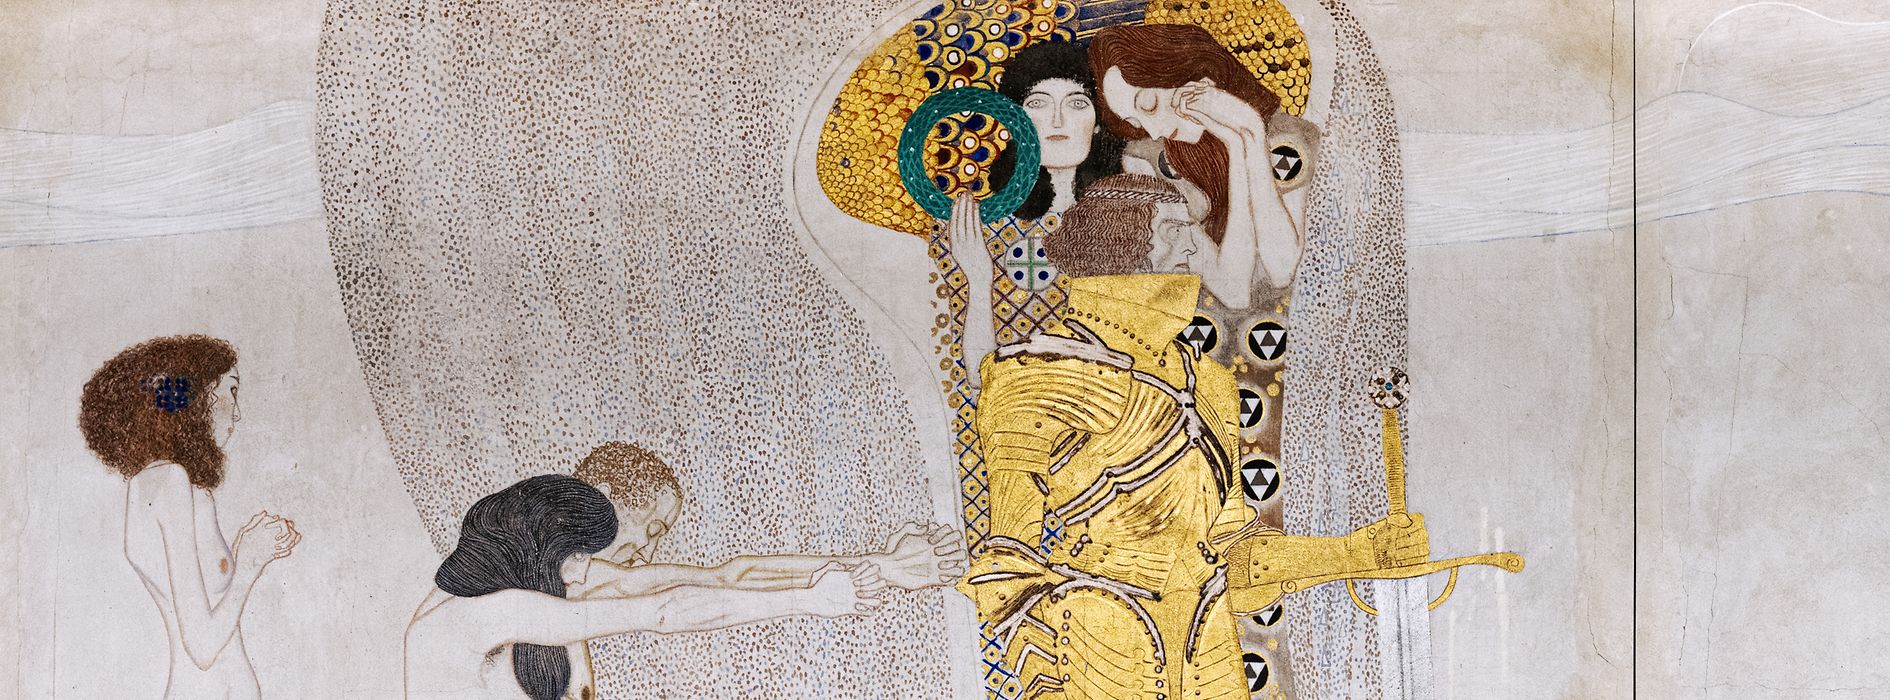 Il Fregio di Beethoven di Gustav Klimt